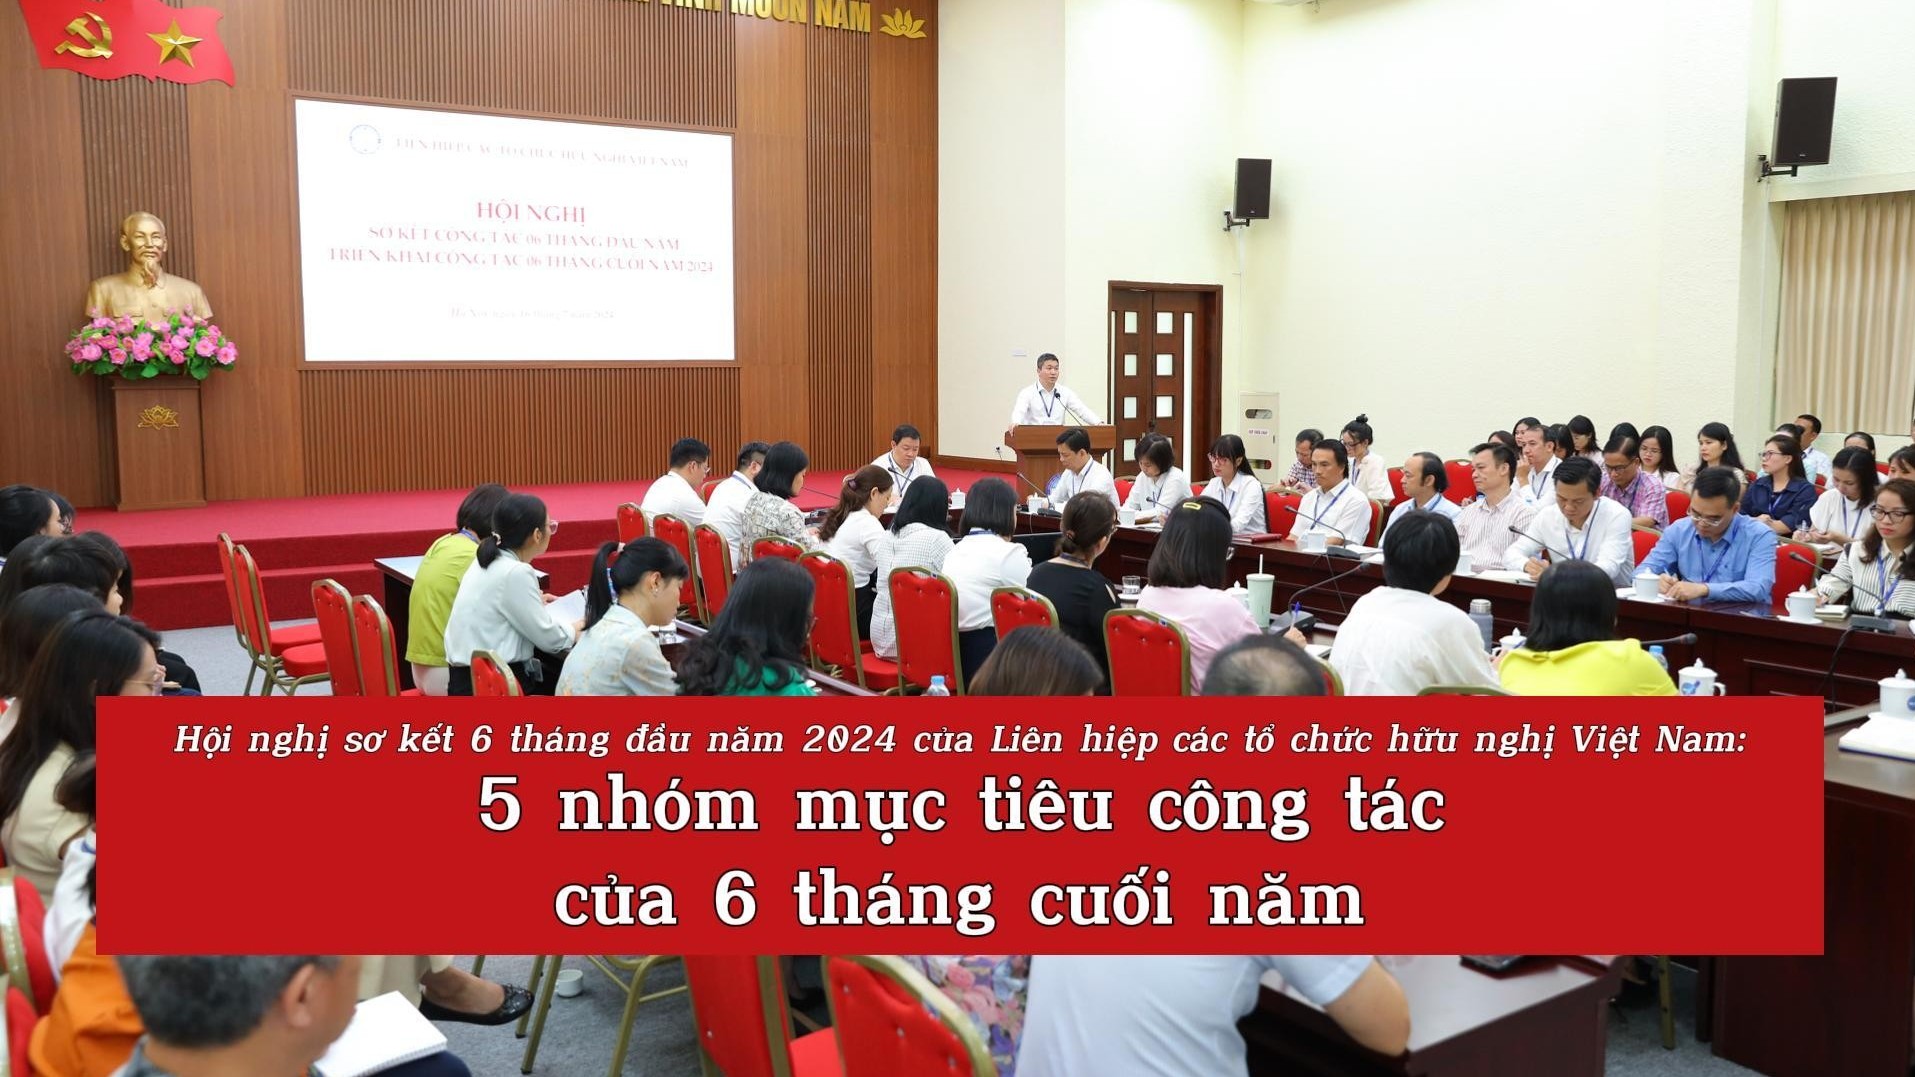 [Video] Hội nghị sơ kết 6 tháng đầu năm 2024 của Liên hiệp các tổ chức hữu nghị Việt Nam: 5 nhóm mục tiêu công tác của 6 tháng cuối năm